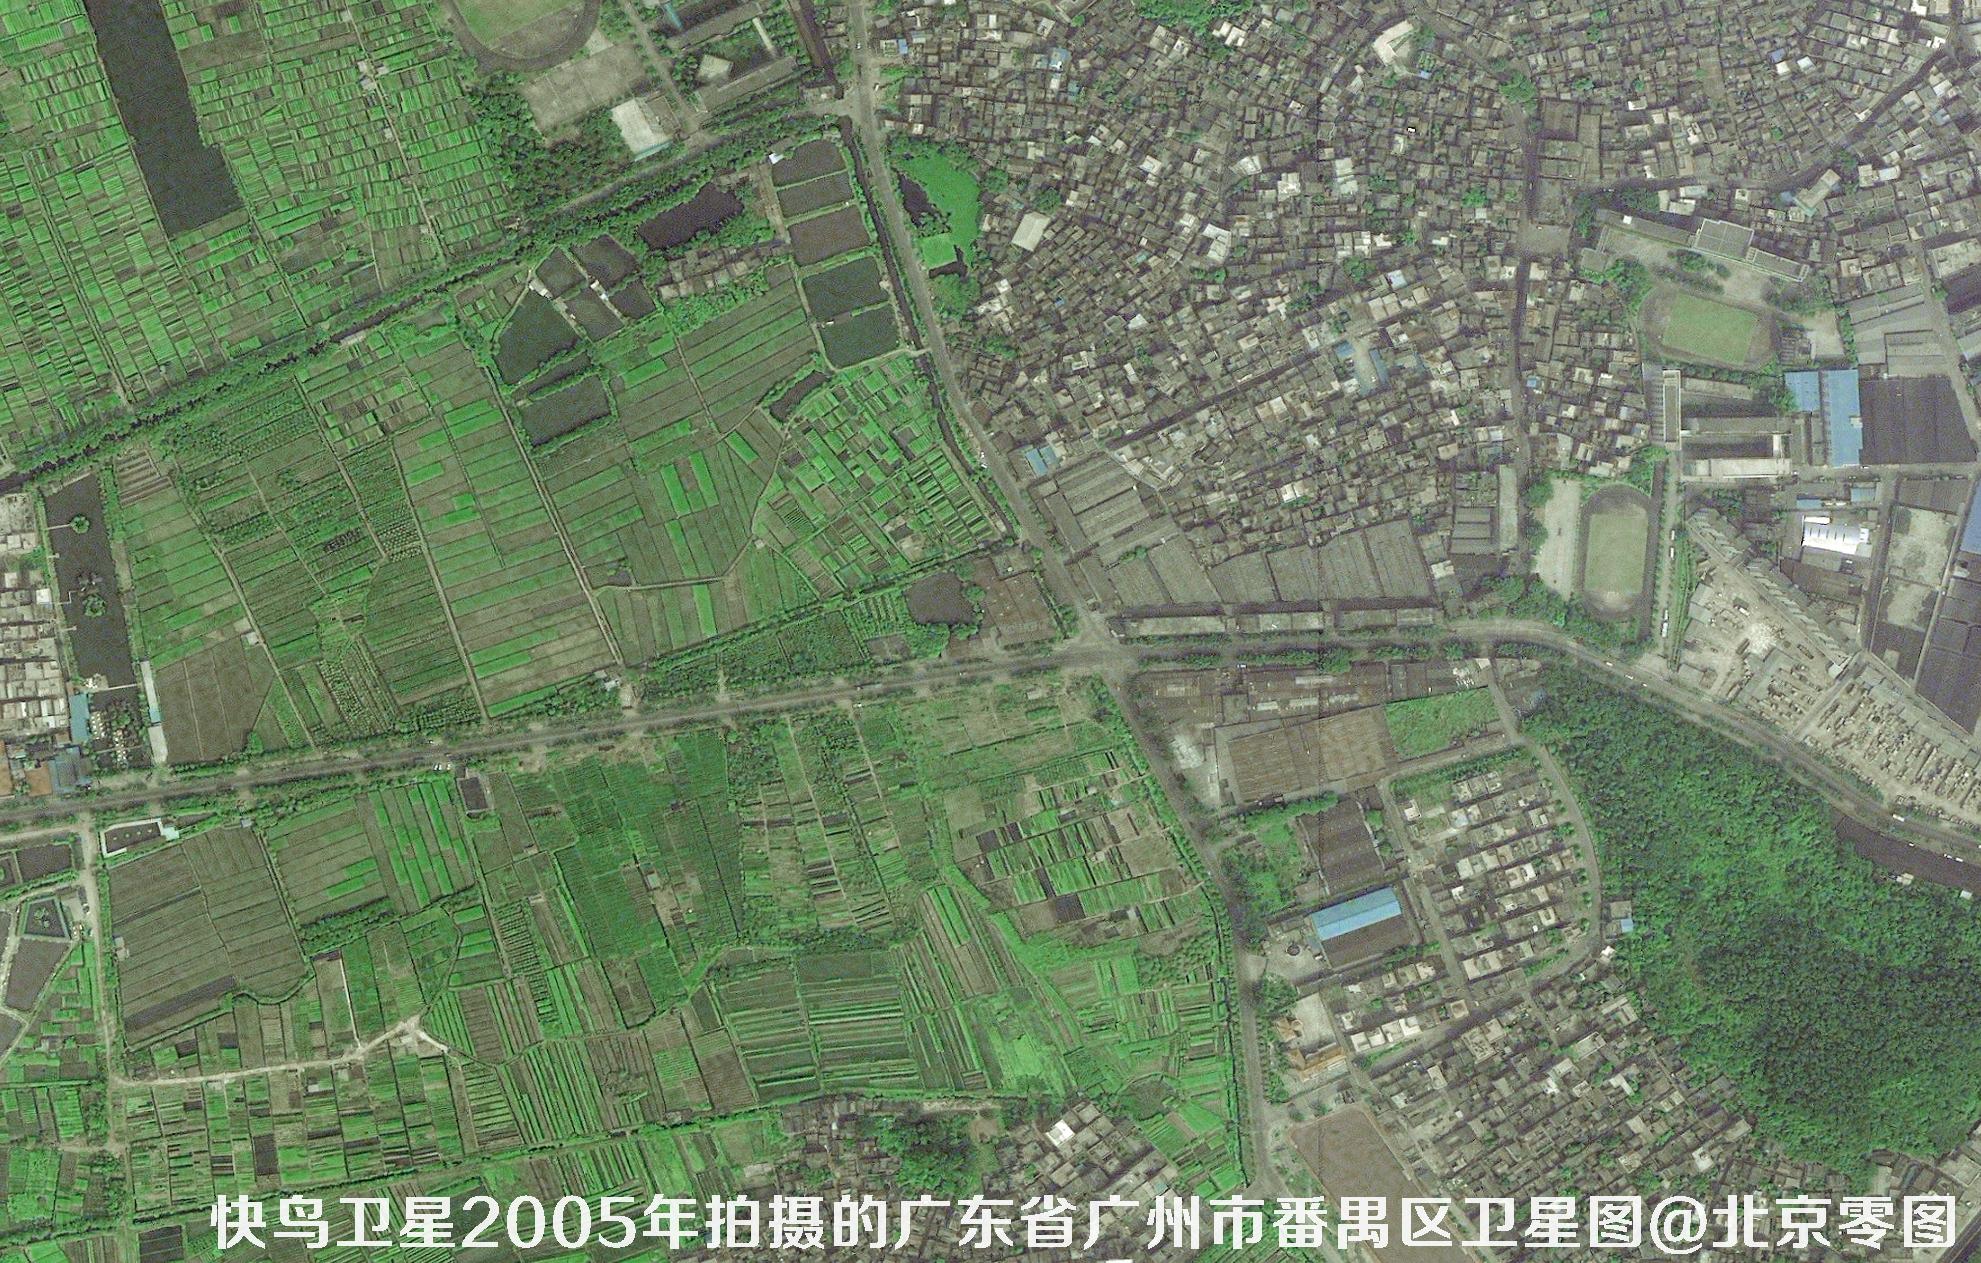 0.6米QB快鸟卫星拍摄的高清影像图片